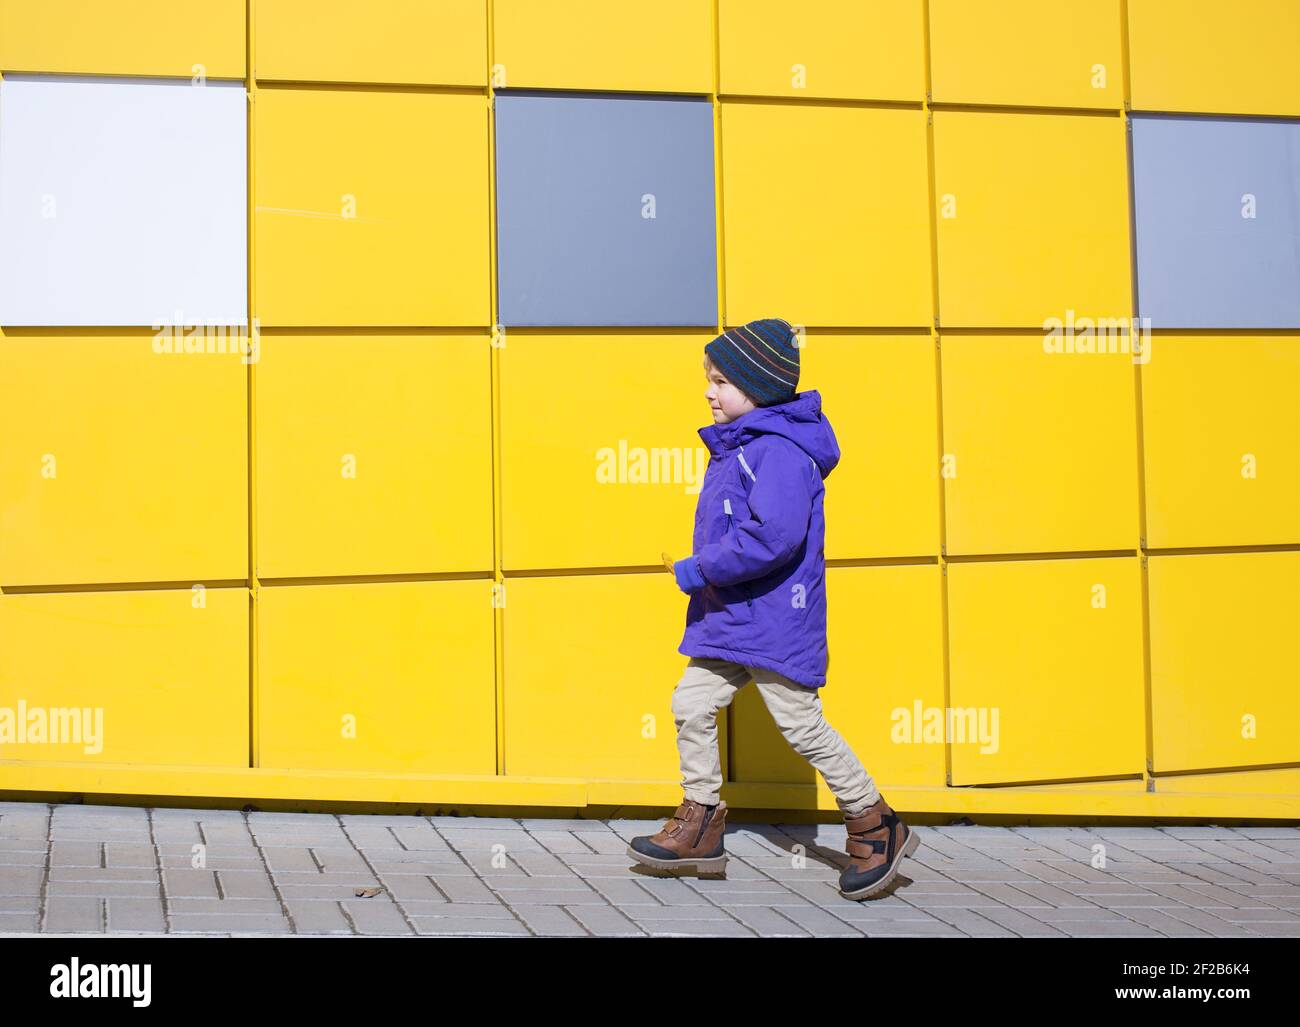 Un tout-petit garçon dans une veste violette se déplace vers l'avant le long des murs d'un mur jaune vif. Concept avancé. Positif. Charge d'énergie. Couleurs du yea Banque D'Images